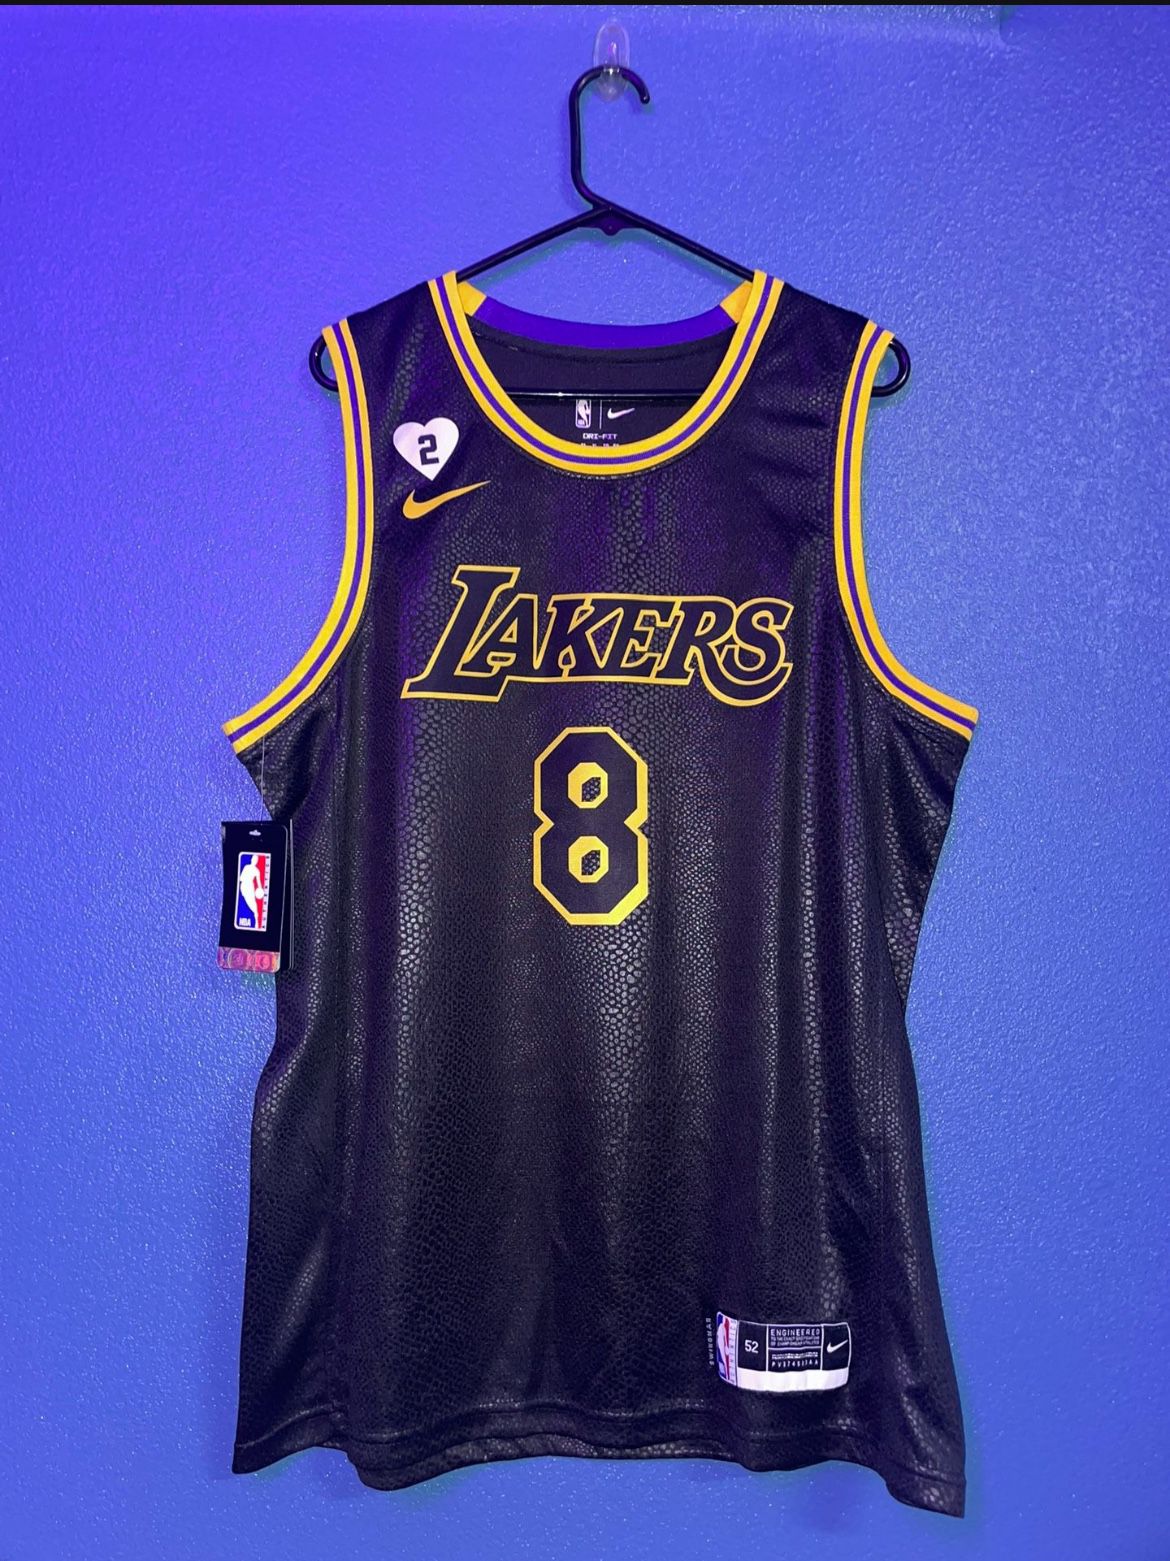 Lakers Black Mamba Kobe Bryant Jersey 8/24